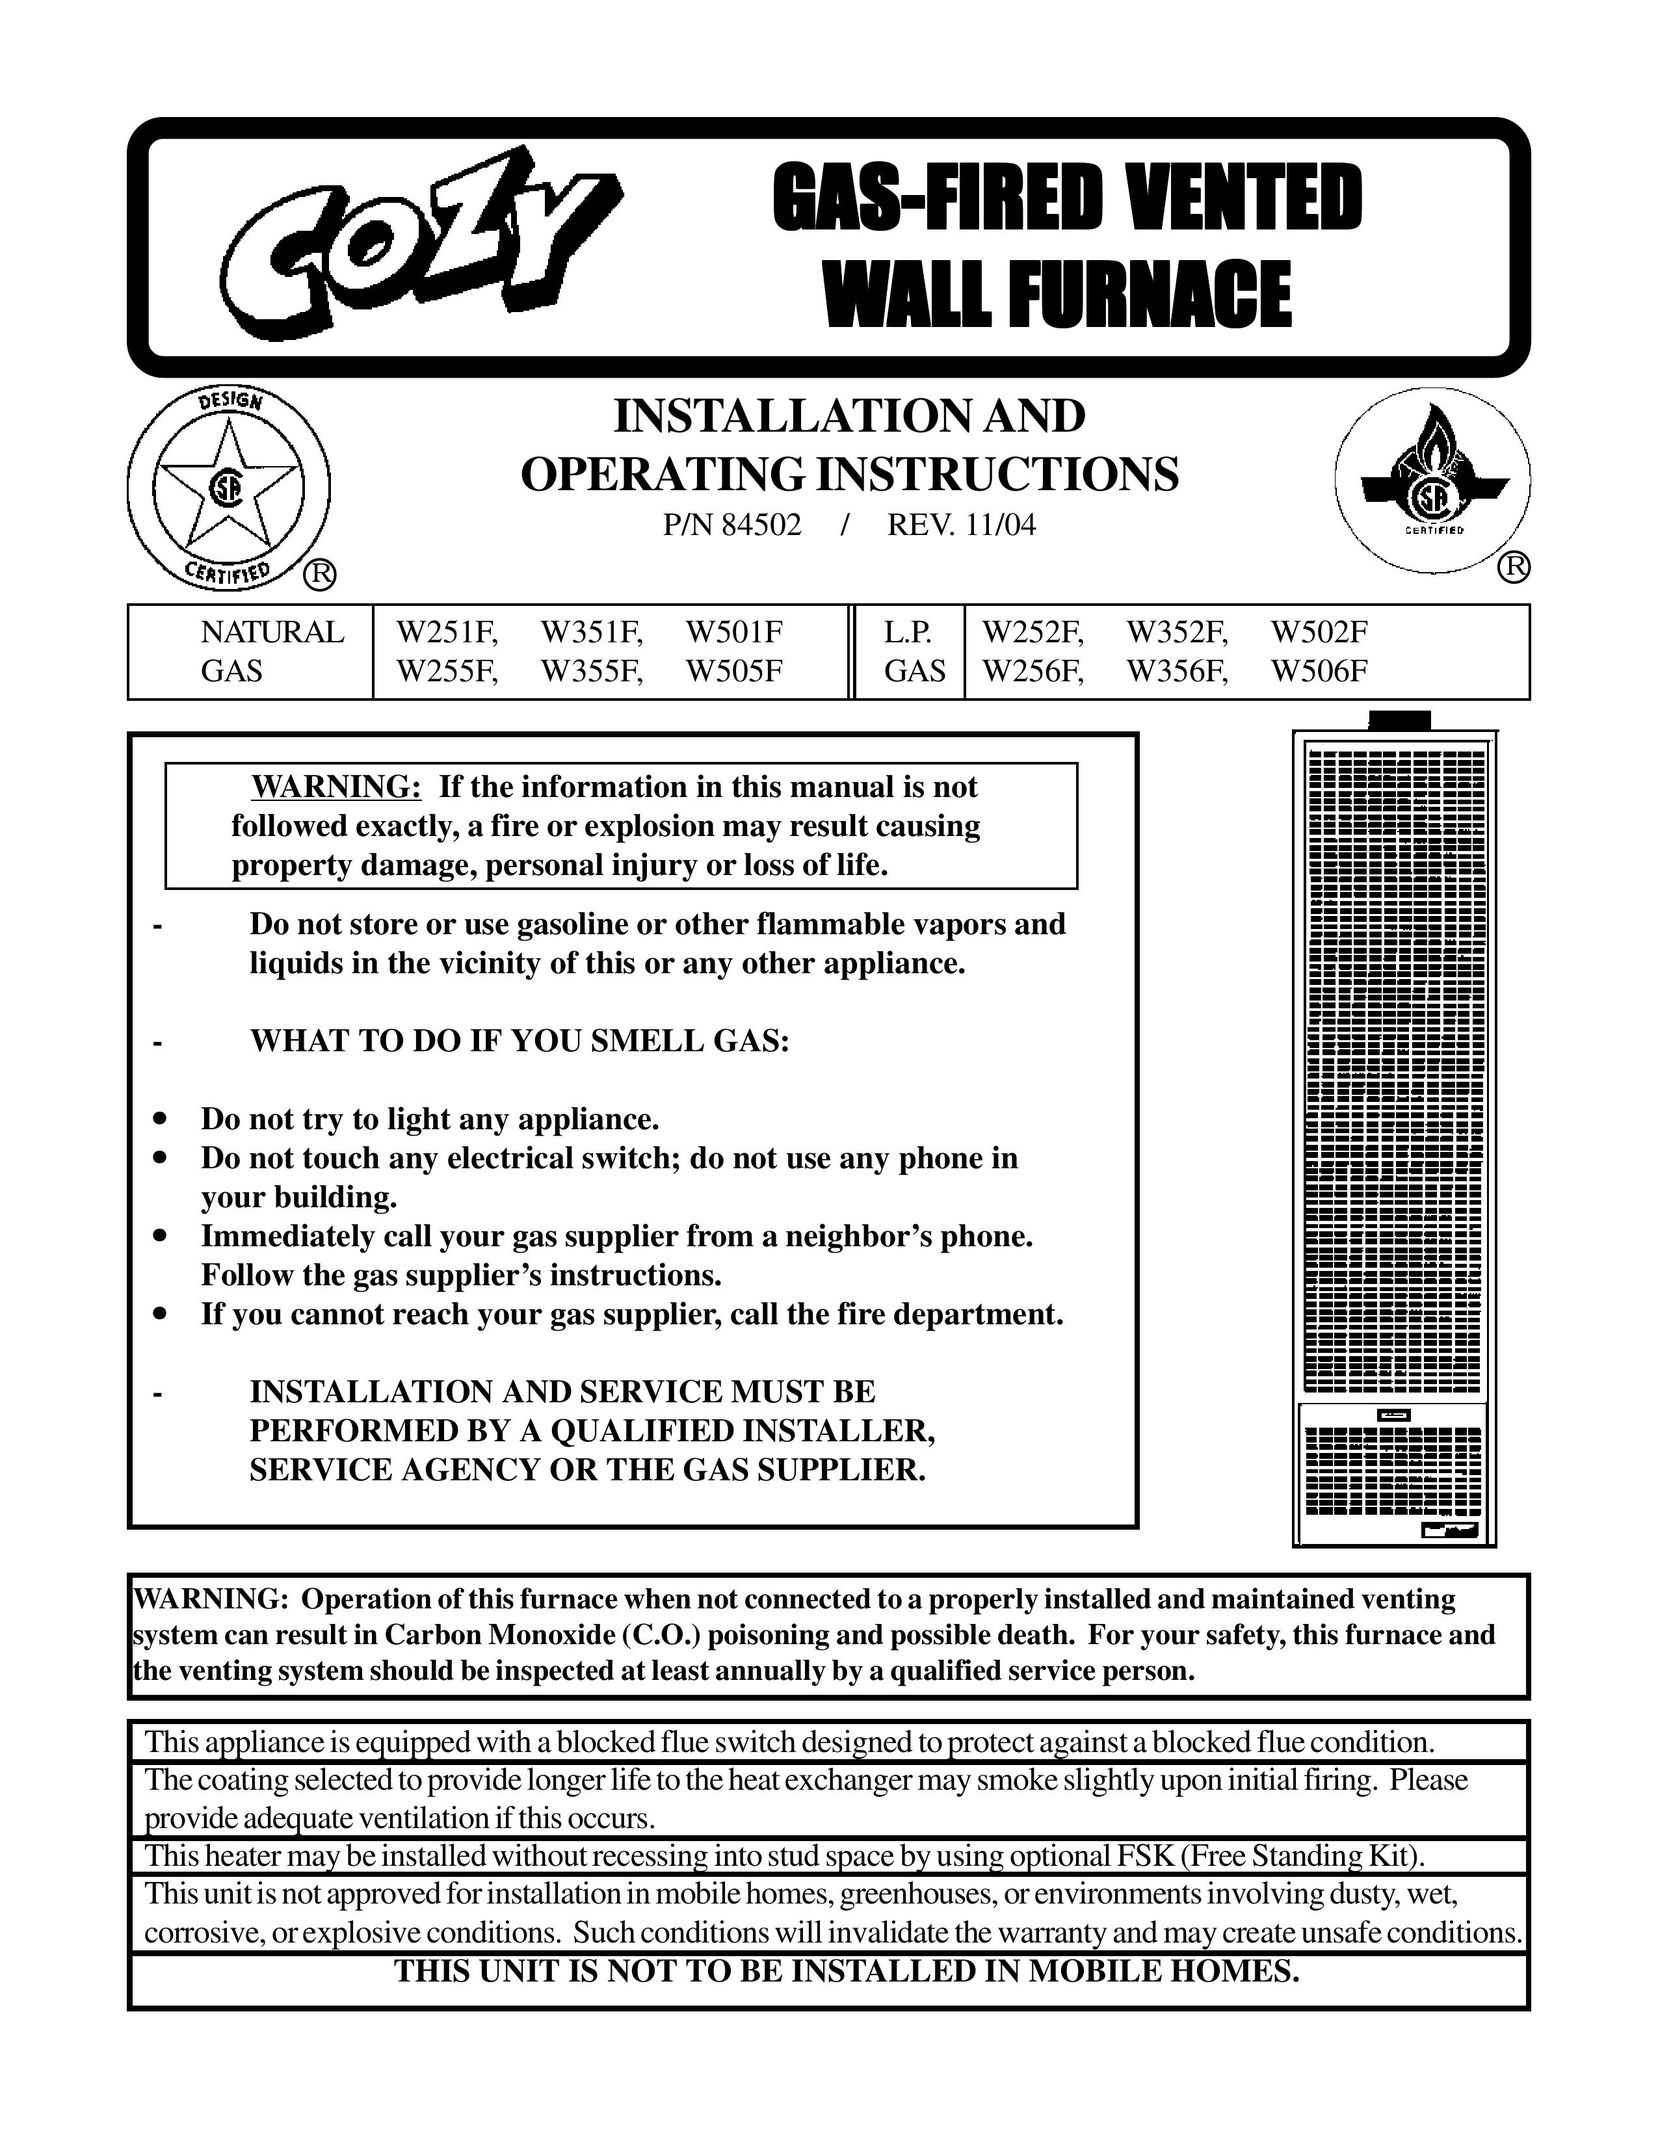 Louisville Tin and Stove W505F W256F Furnace User Manual